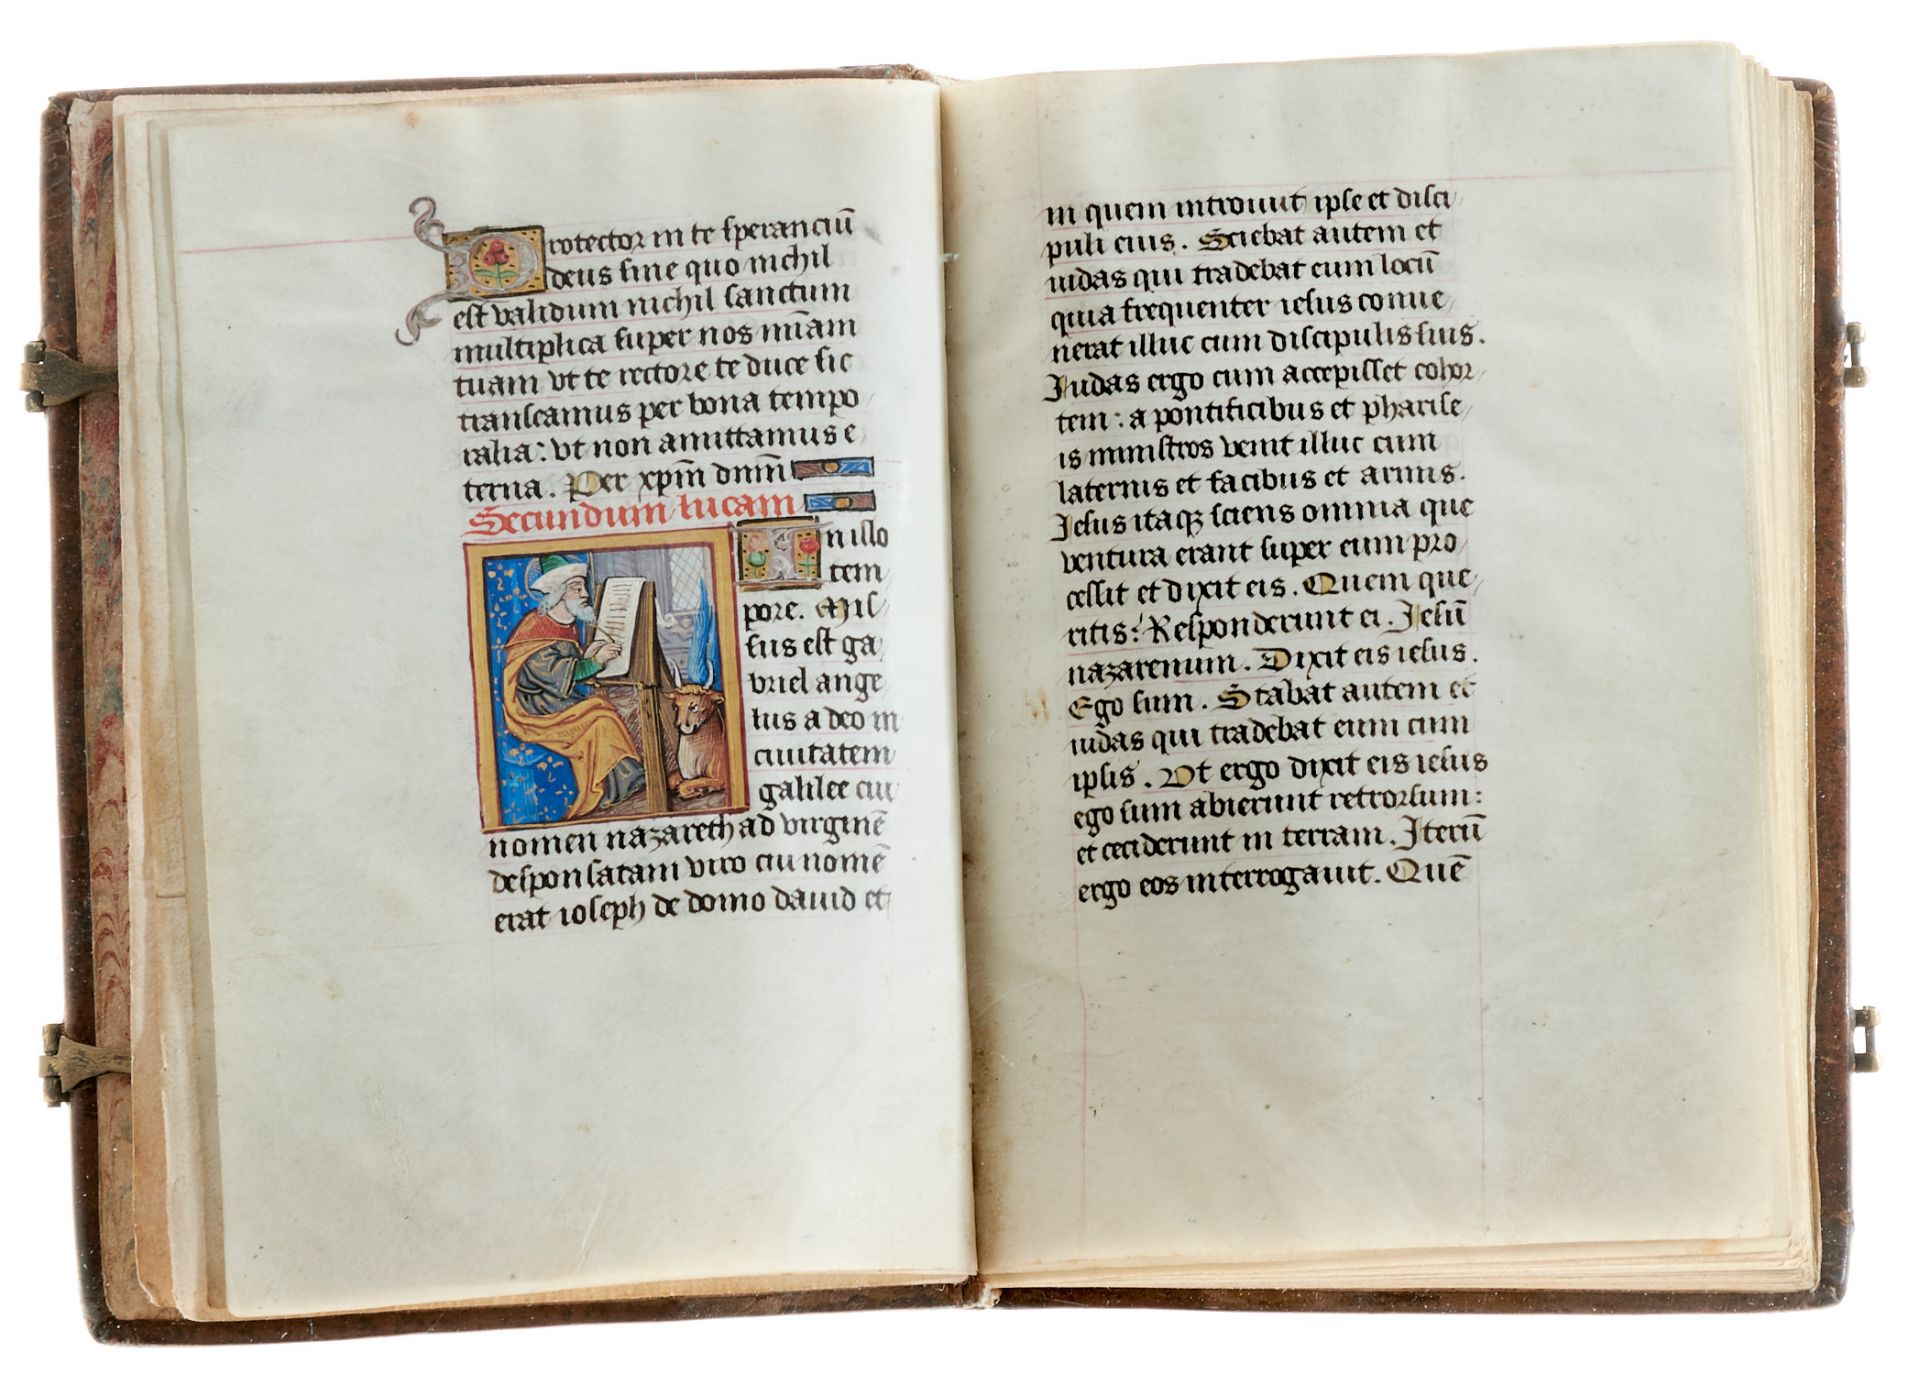 Pariser Stundenbuch. Lateinische Handschrift auf Pergament. Paris, um 1500. Ca. 14 x 10 cm. - Bild 4 aus 26